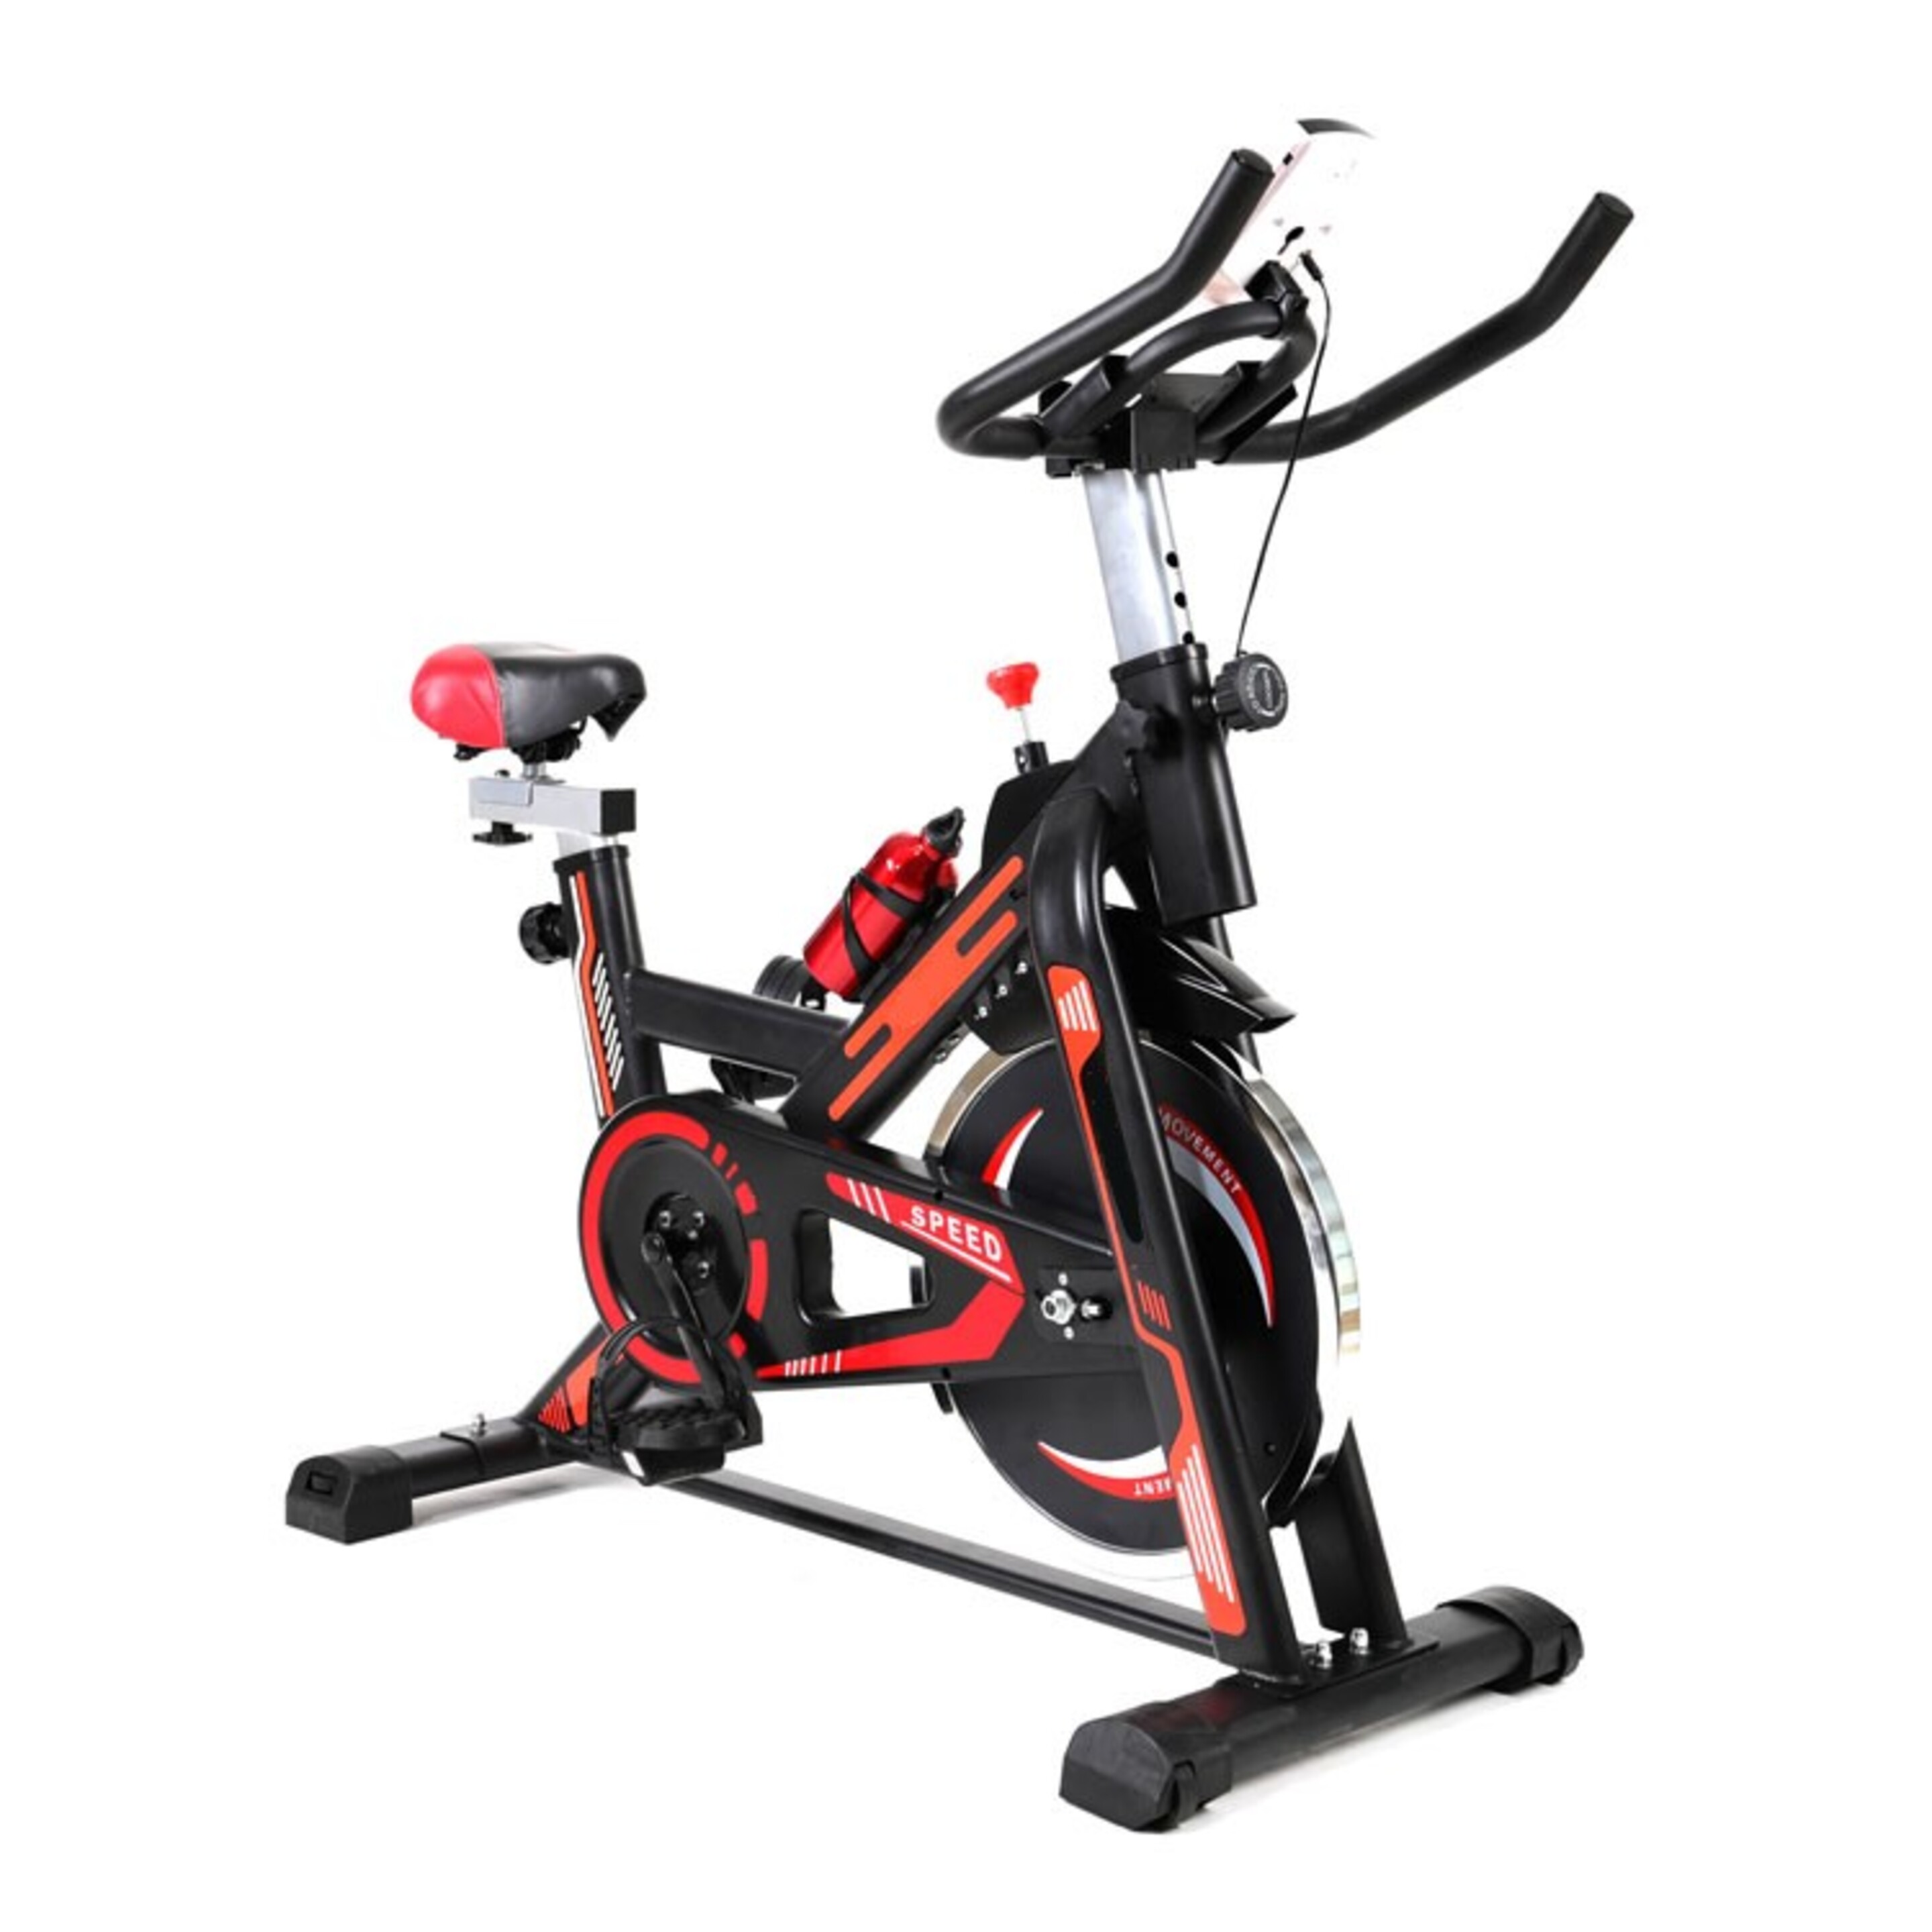 Bicicleta Grupo Contact Ciclo Indoor Con Display Para Medir Velocidad, Distancia, Calorías Y Tiempo. - negro - 